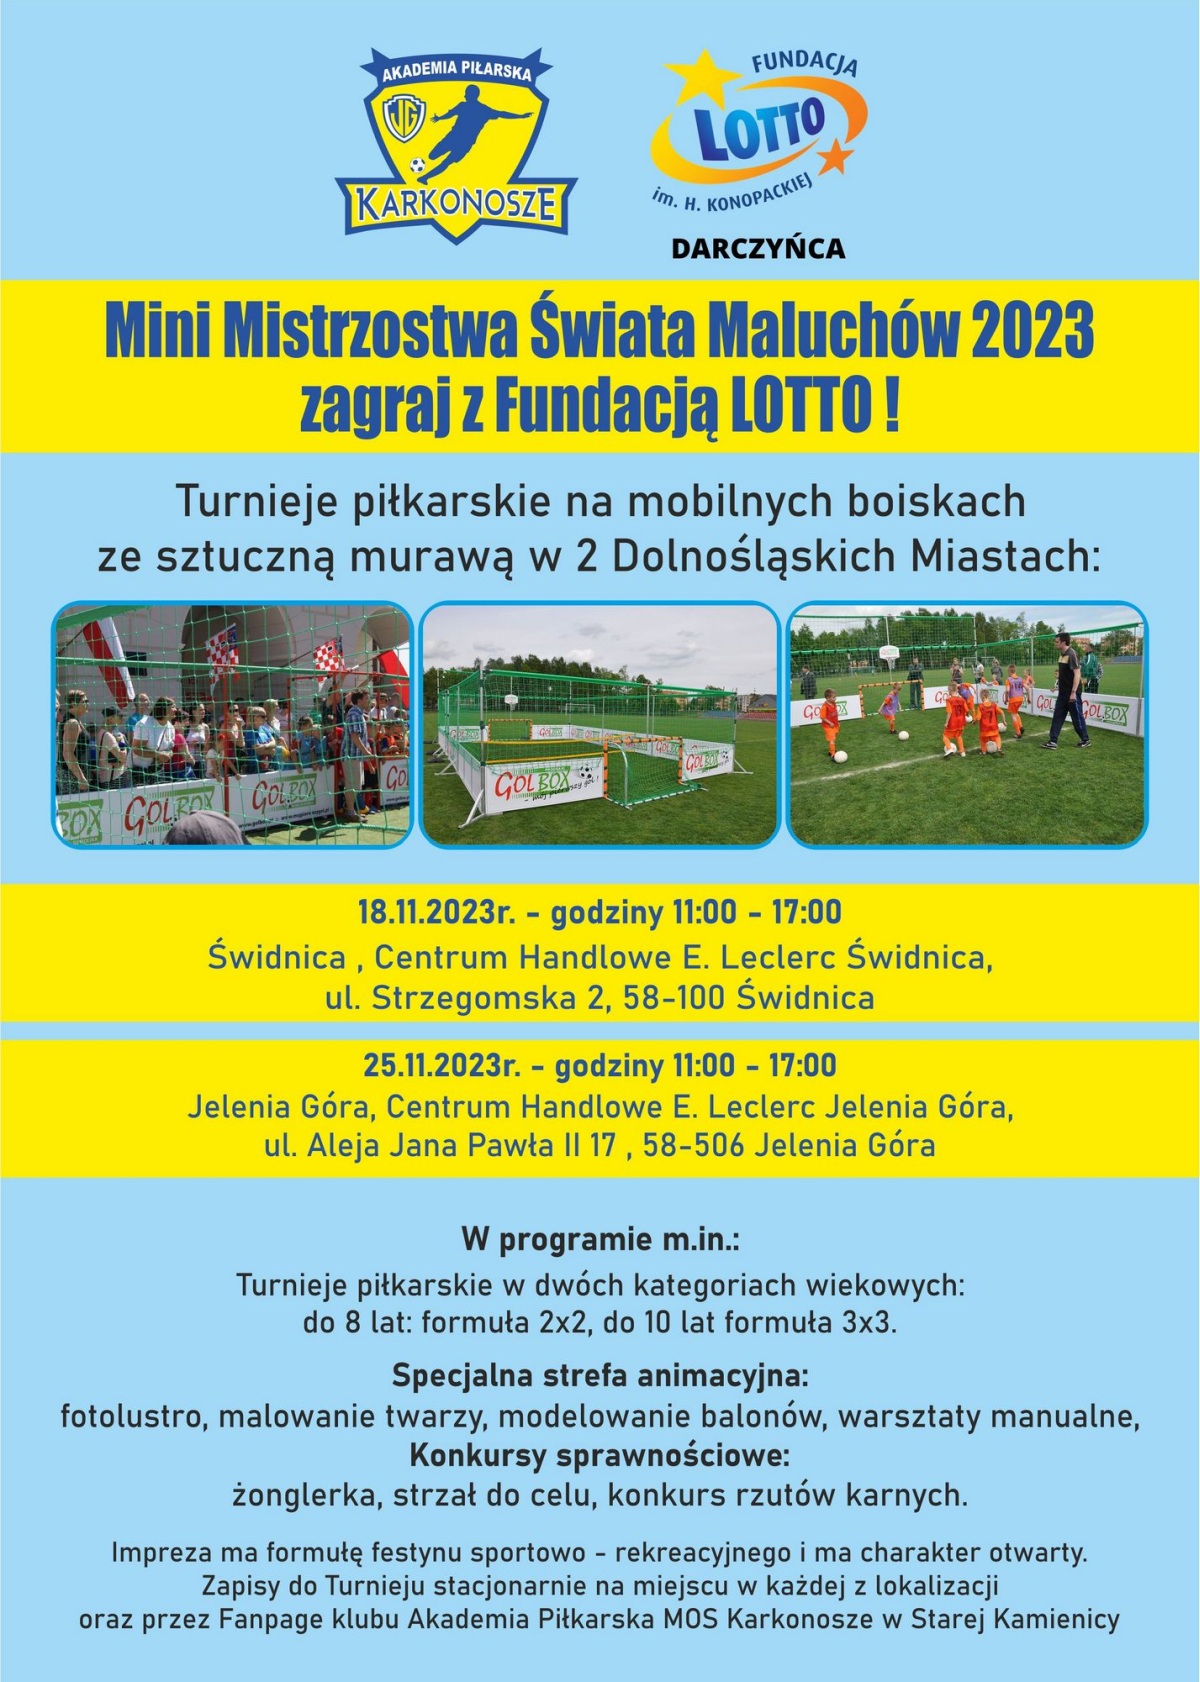 Mini Mistrzostwa Świata Maluchów 2023 -zagraj z Fundacją Lotto!